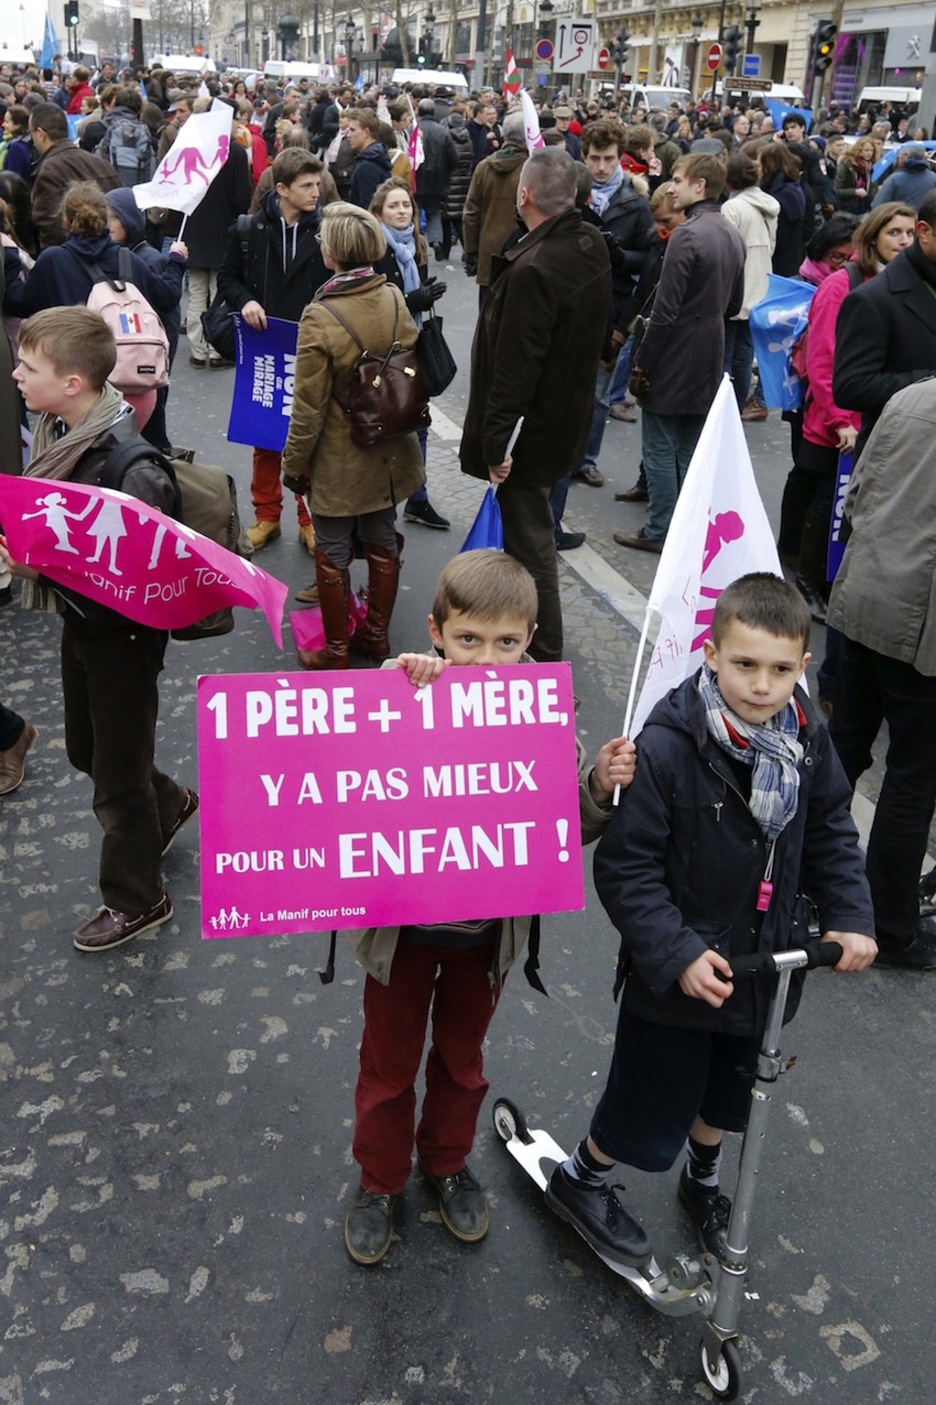 ‘Un padre y una madre. No hay nada mejor para un niño’, decía el cartel que portaba este niño. (Pierre VERDY/AFP)